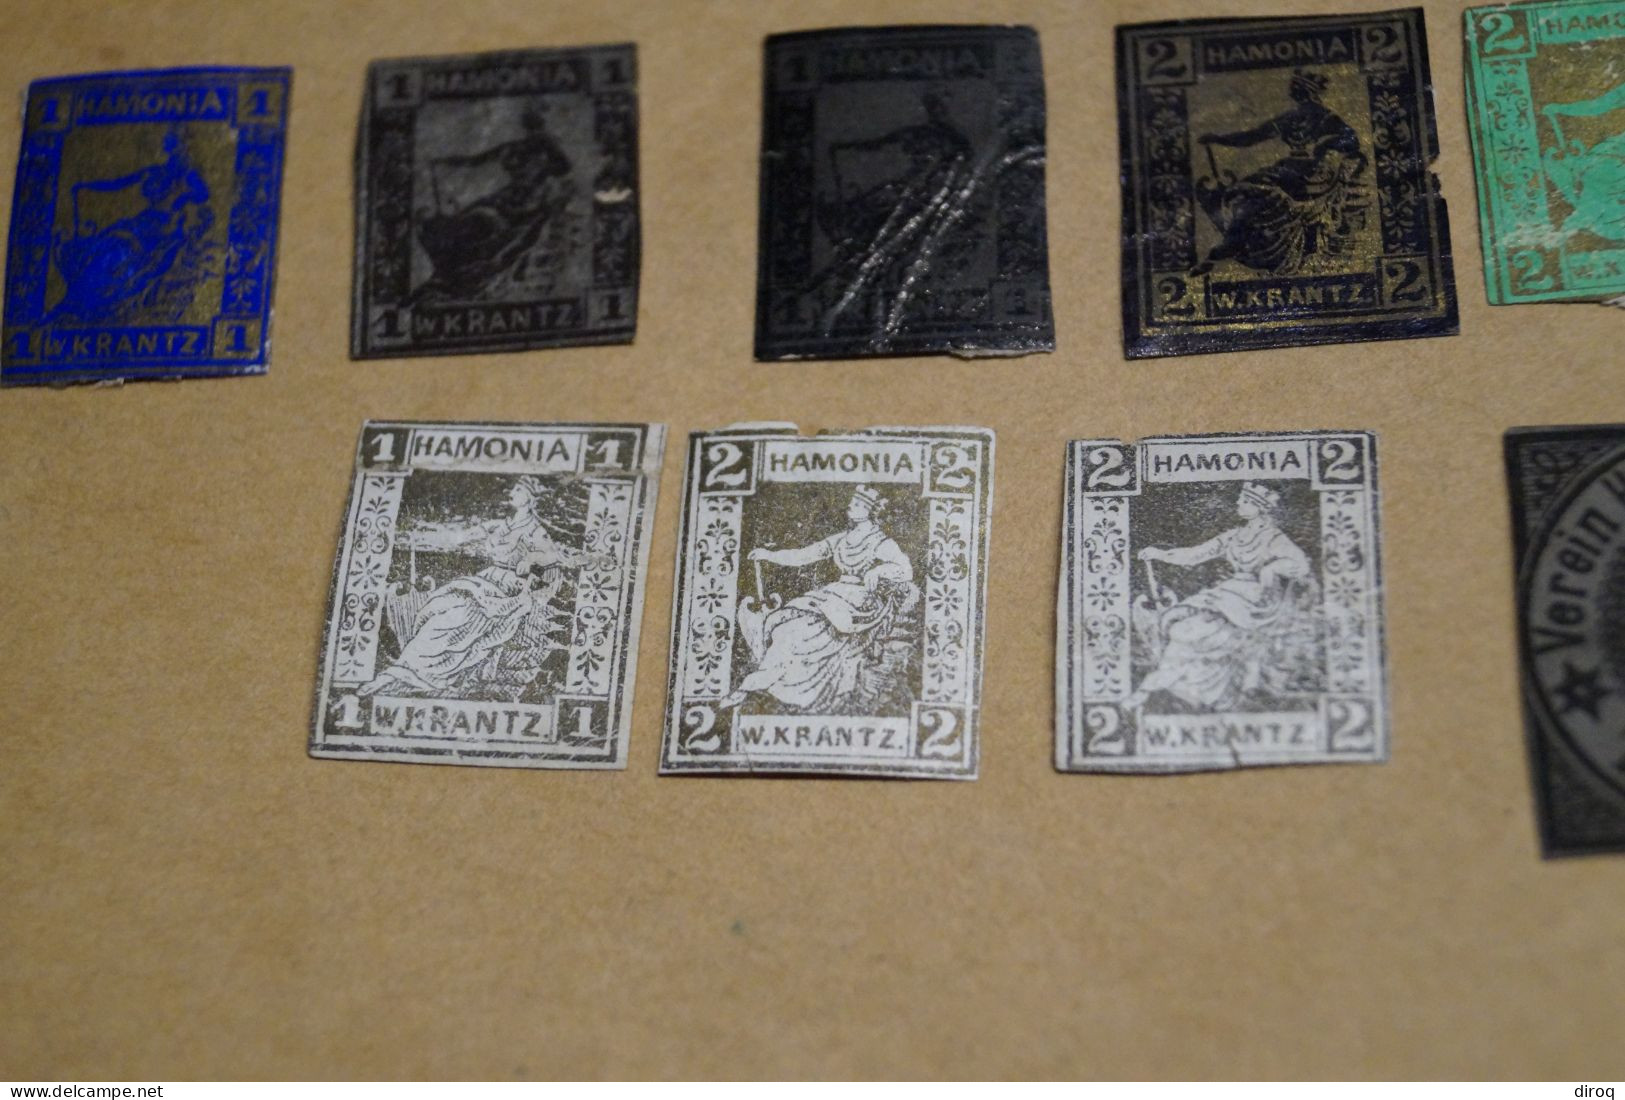 19 timbres, Hamburger + Hamonia , en bel état, voir photos pour collection